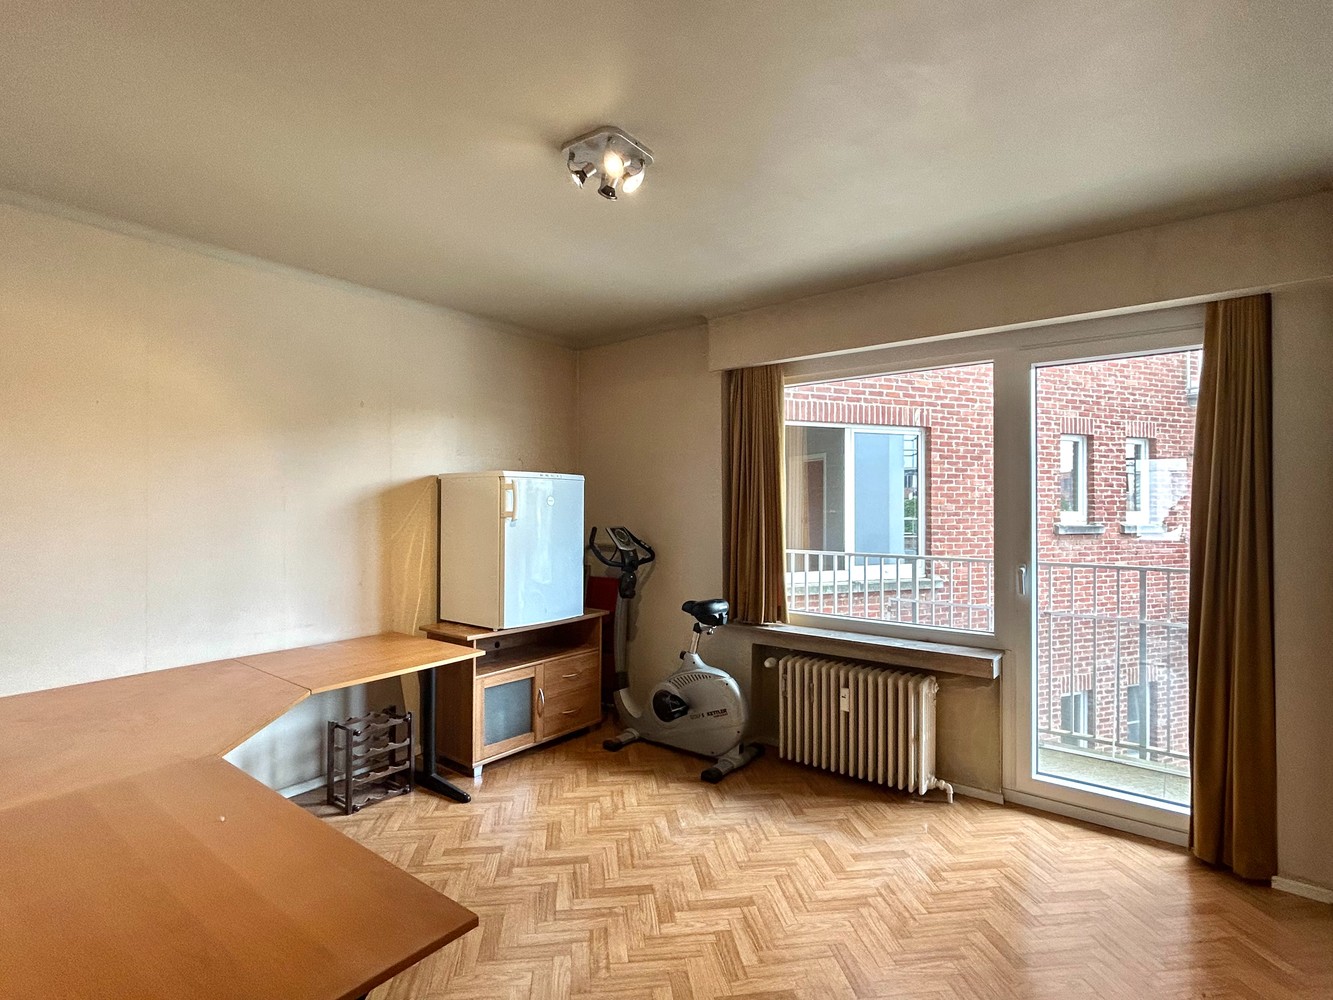 Ruim appartement met 2 slaapkamers in hartje Leuven! foto 10